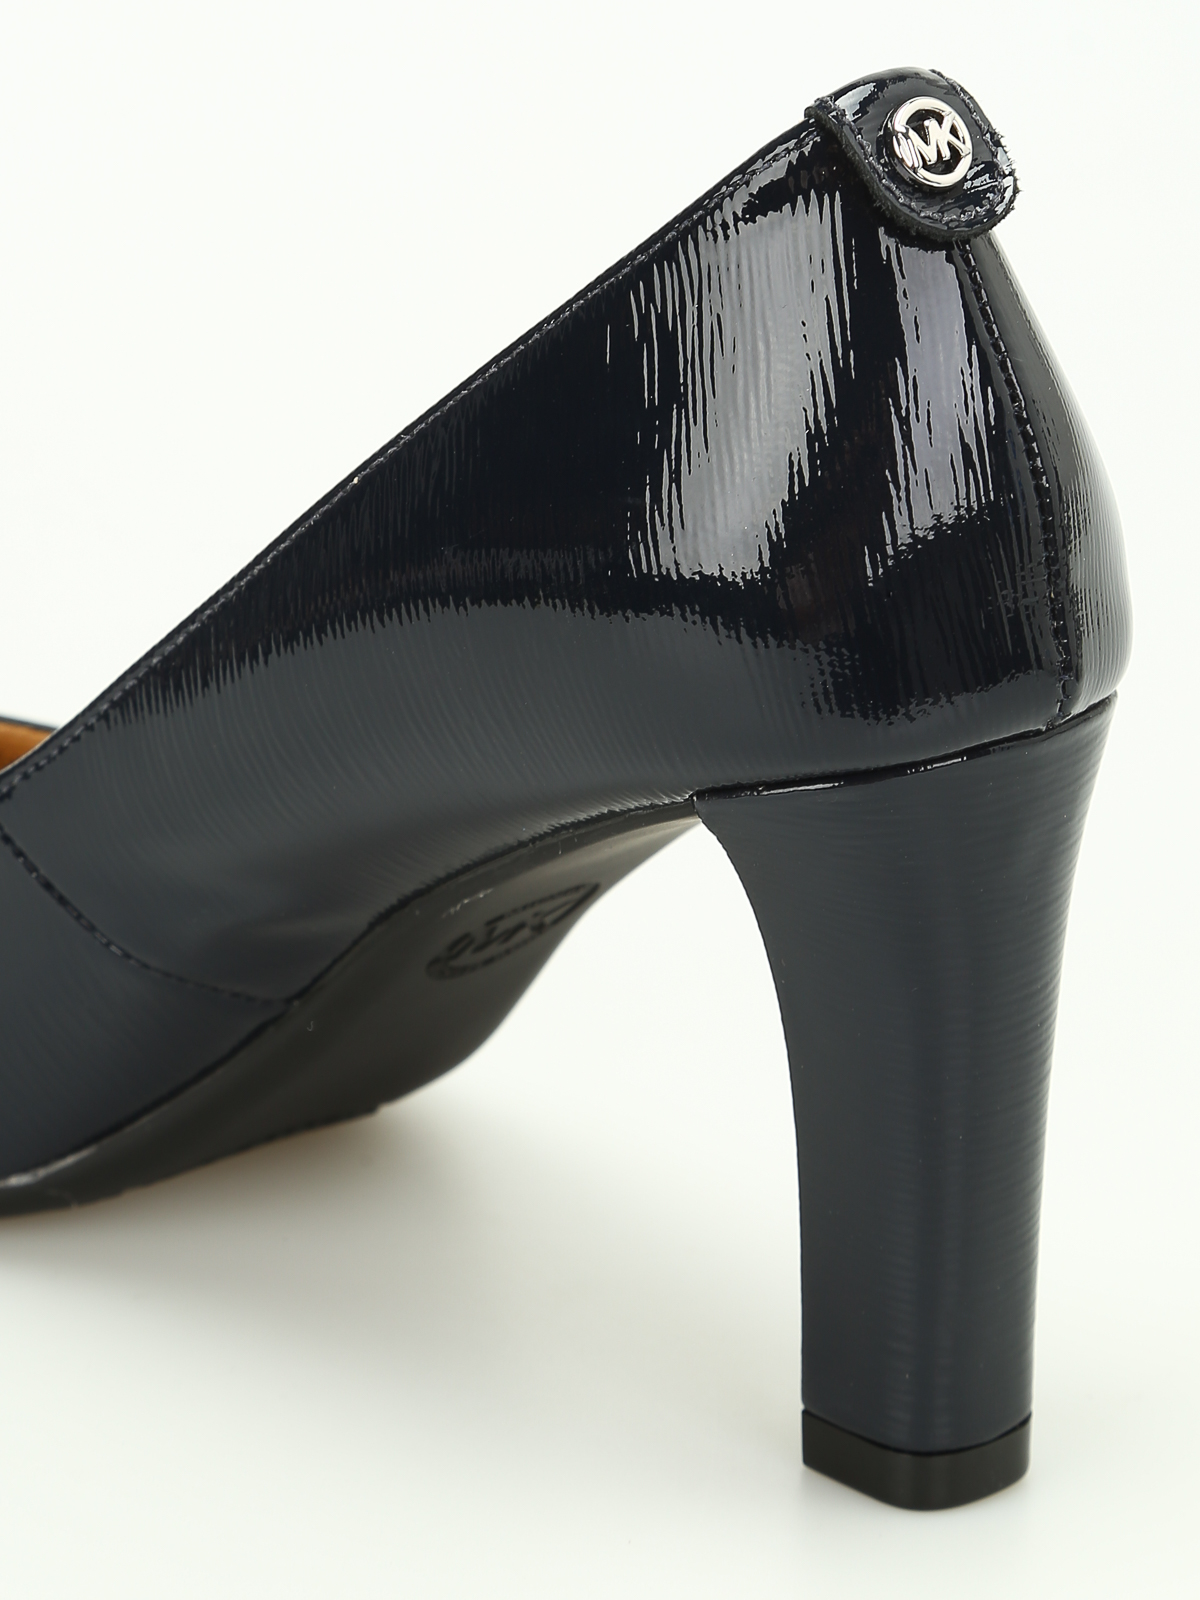 Court shoes Michael Kors - Abbi Flex patent pumps - 40F7ABMP1A414